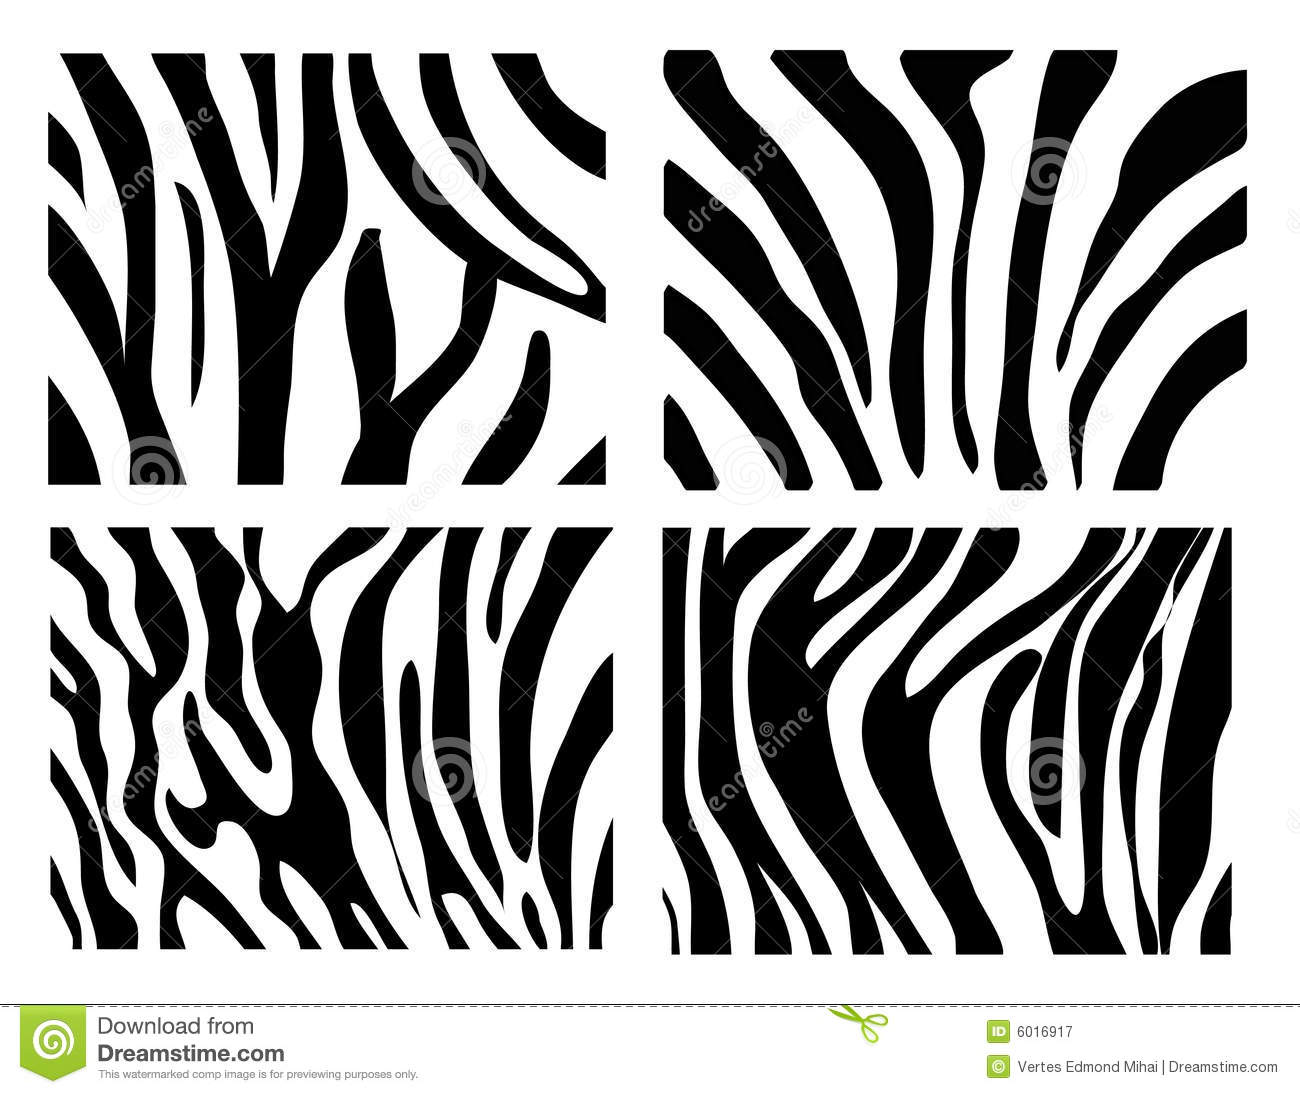 Black and White Zebra Texture